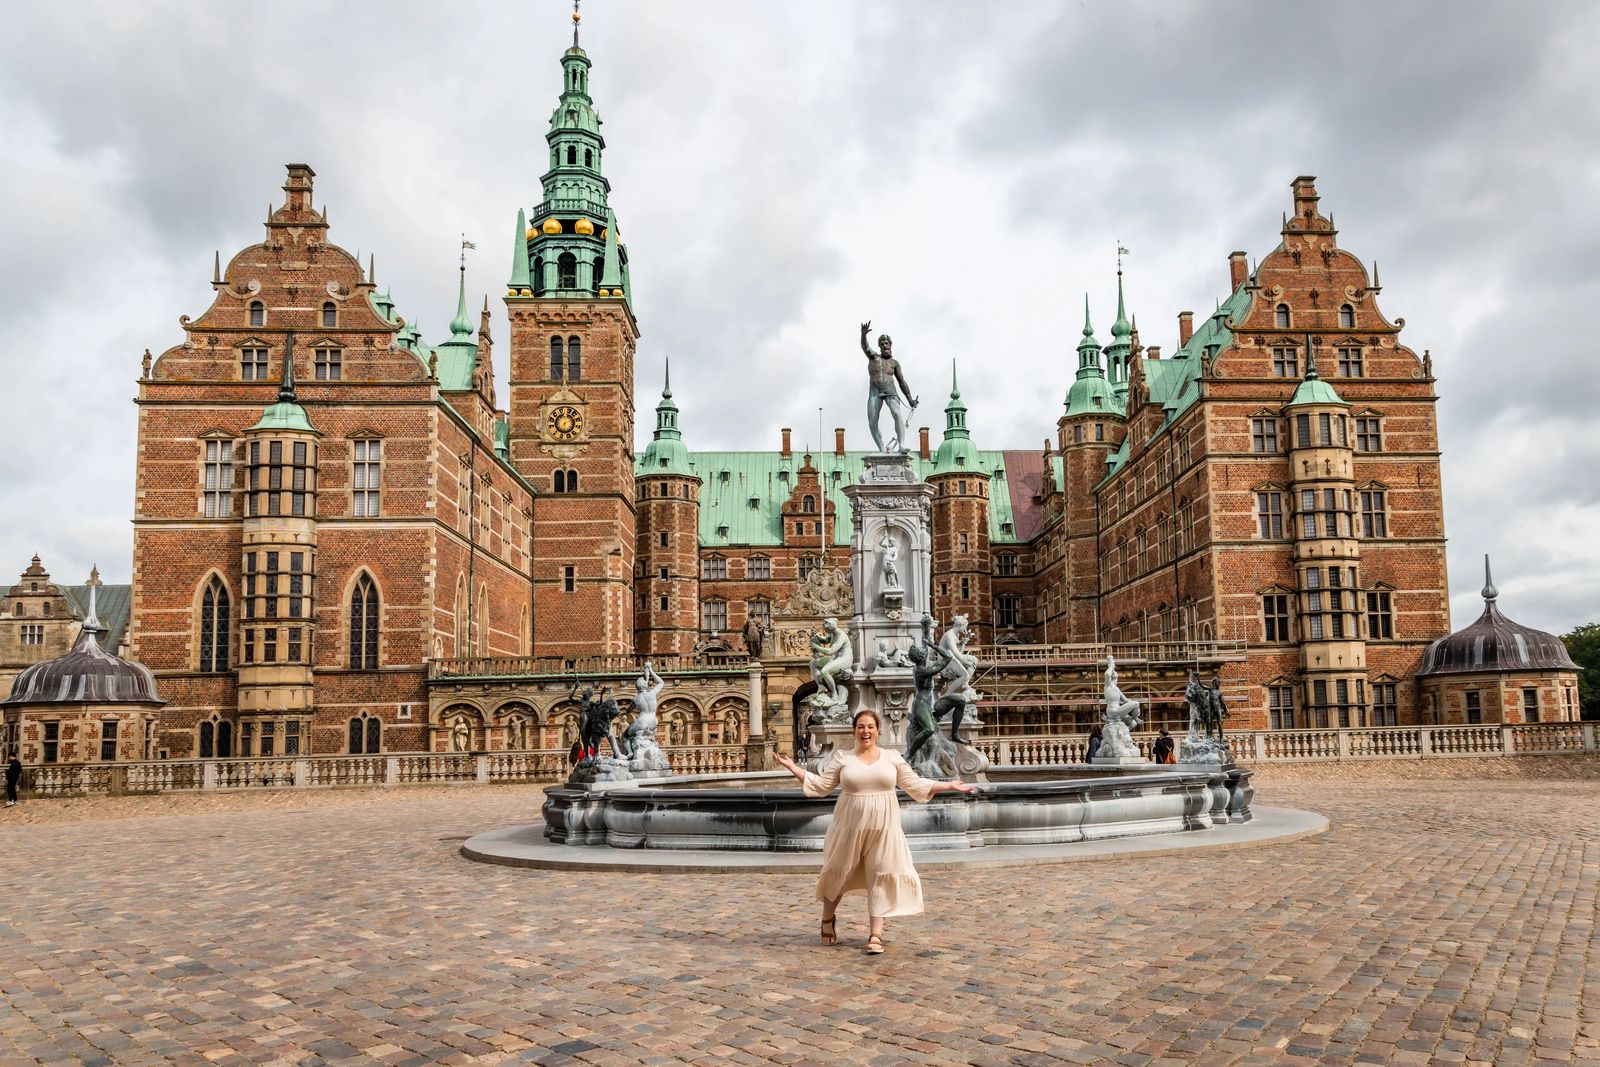 Fredricksborg Castle - best day trips from Copenhagen Denmark